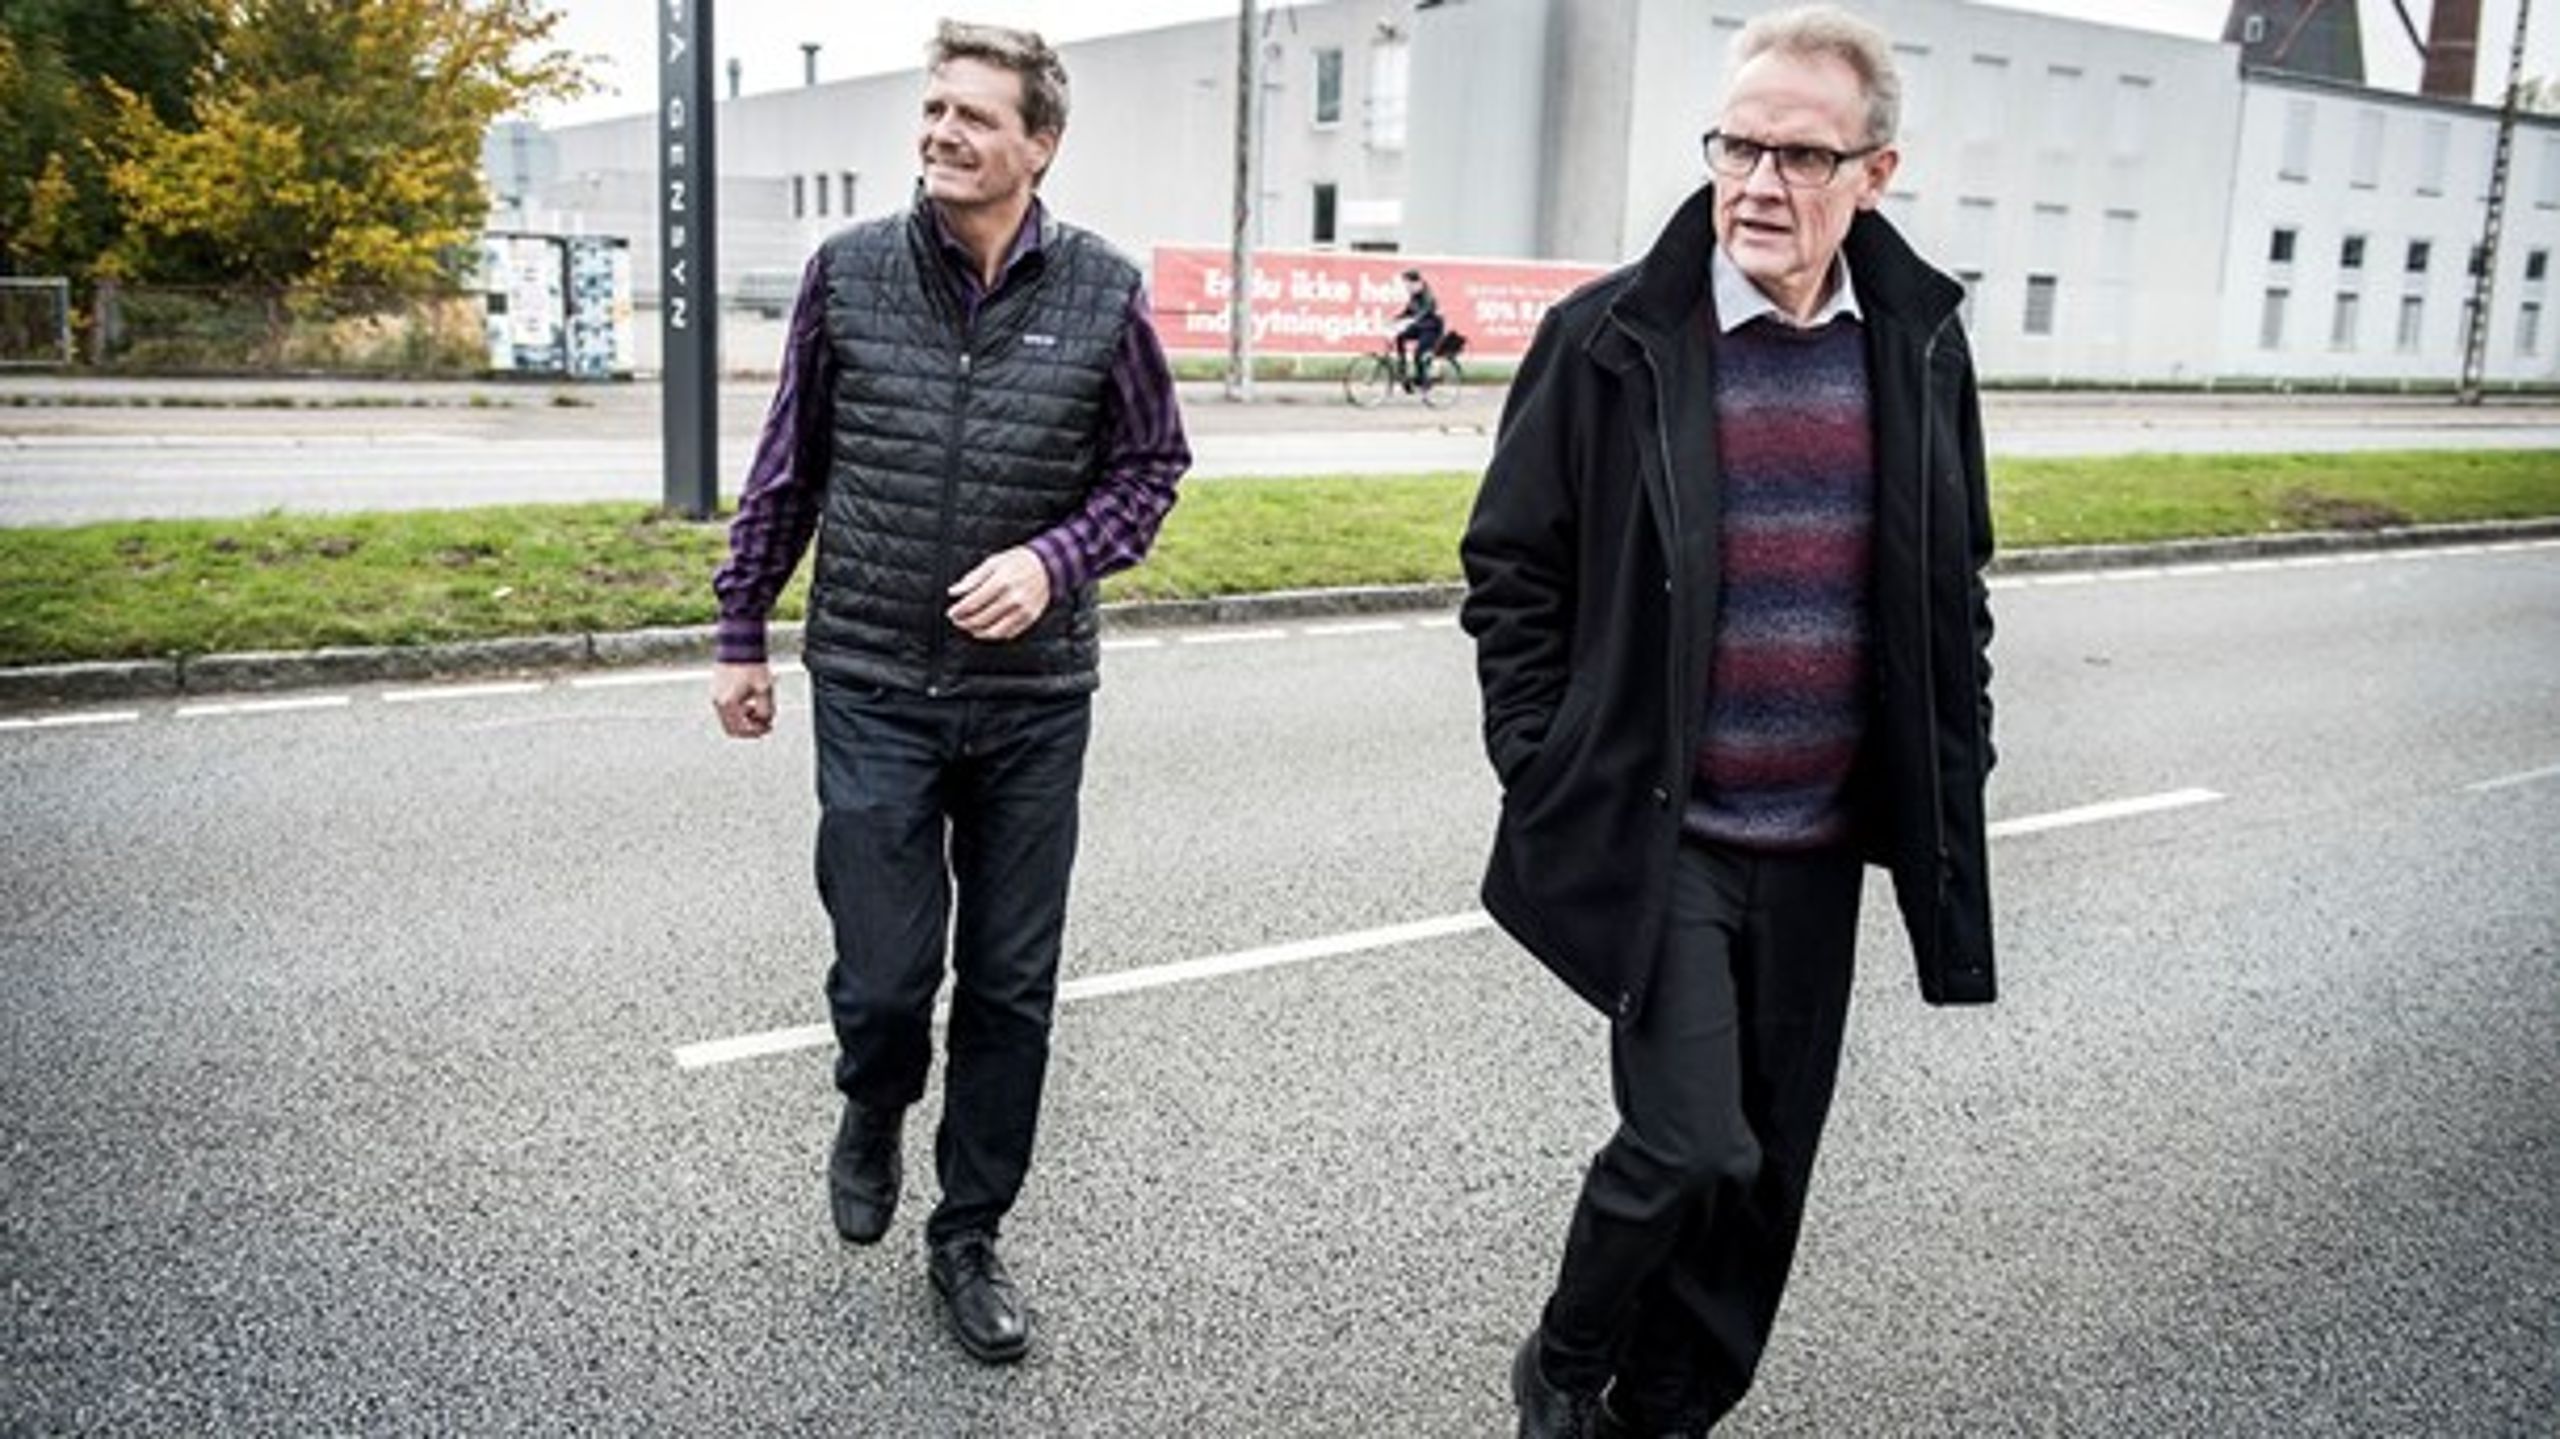 Glostrups Venstre-borgmester John Engelhardt (tv.) er oppe imod et nyt flertal i byrådet, efter at et tidligere venstremedlem og Konservative er gået med i en ny "samarbejdsgruppe" med de røde partier. På billedet er han sammen med Albertslunds borgmester, Steen Christiansen.